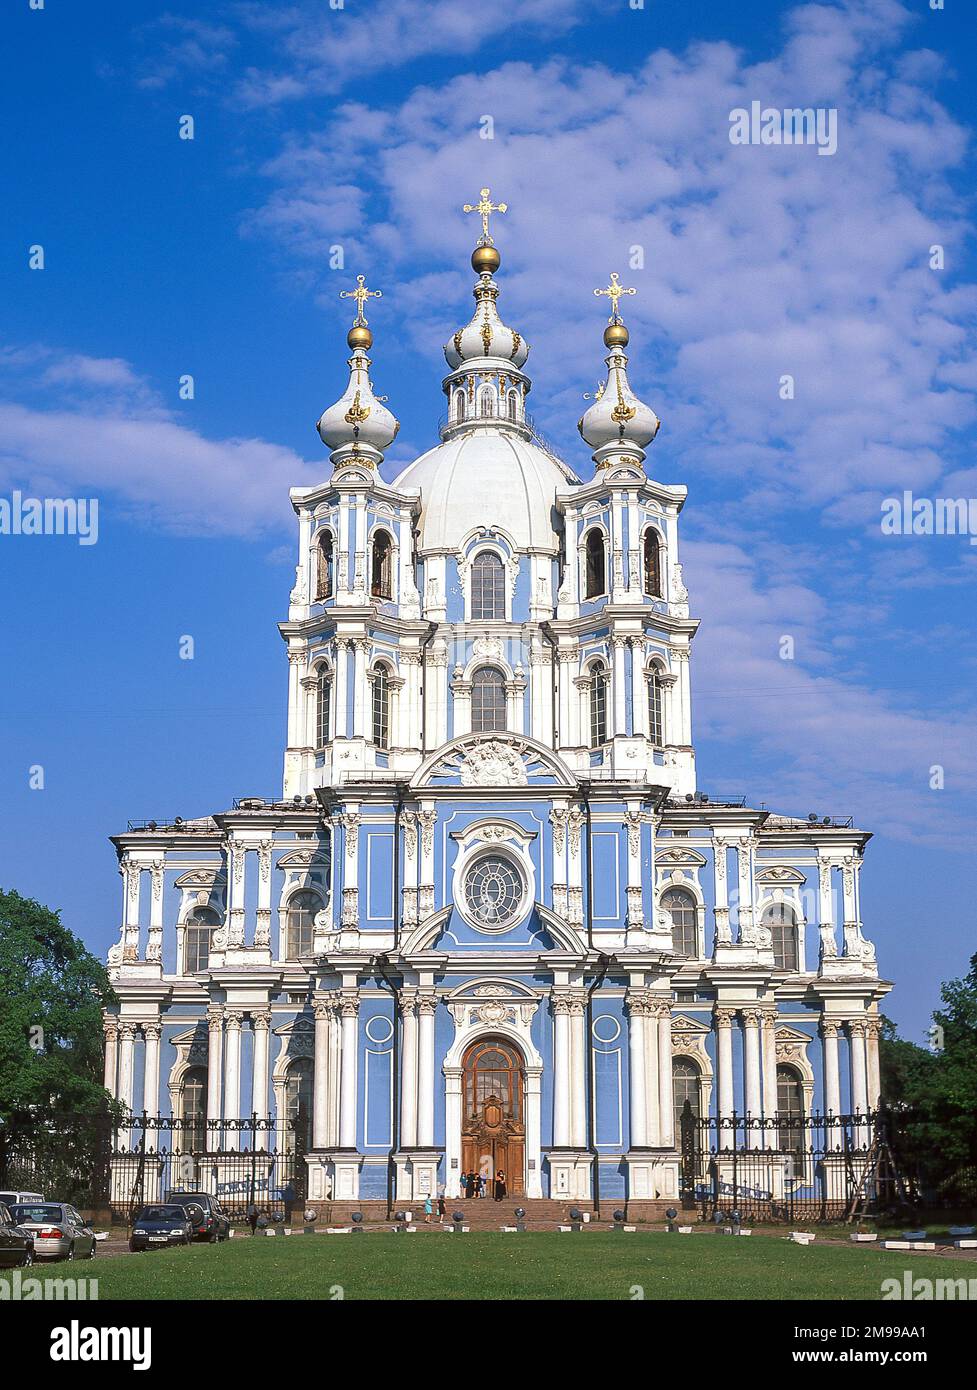 Convento di Smolny, Ploschad Rastrelli (Piazza Rastrelli), San Pietroburgo, Regione nordoccidentale, Russia Foto Stock